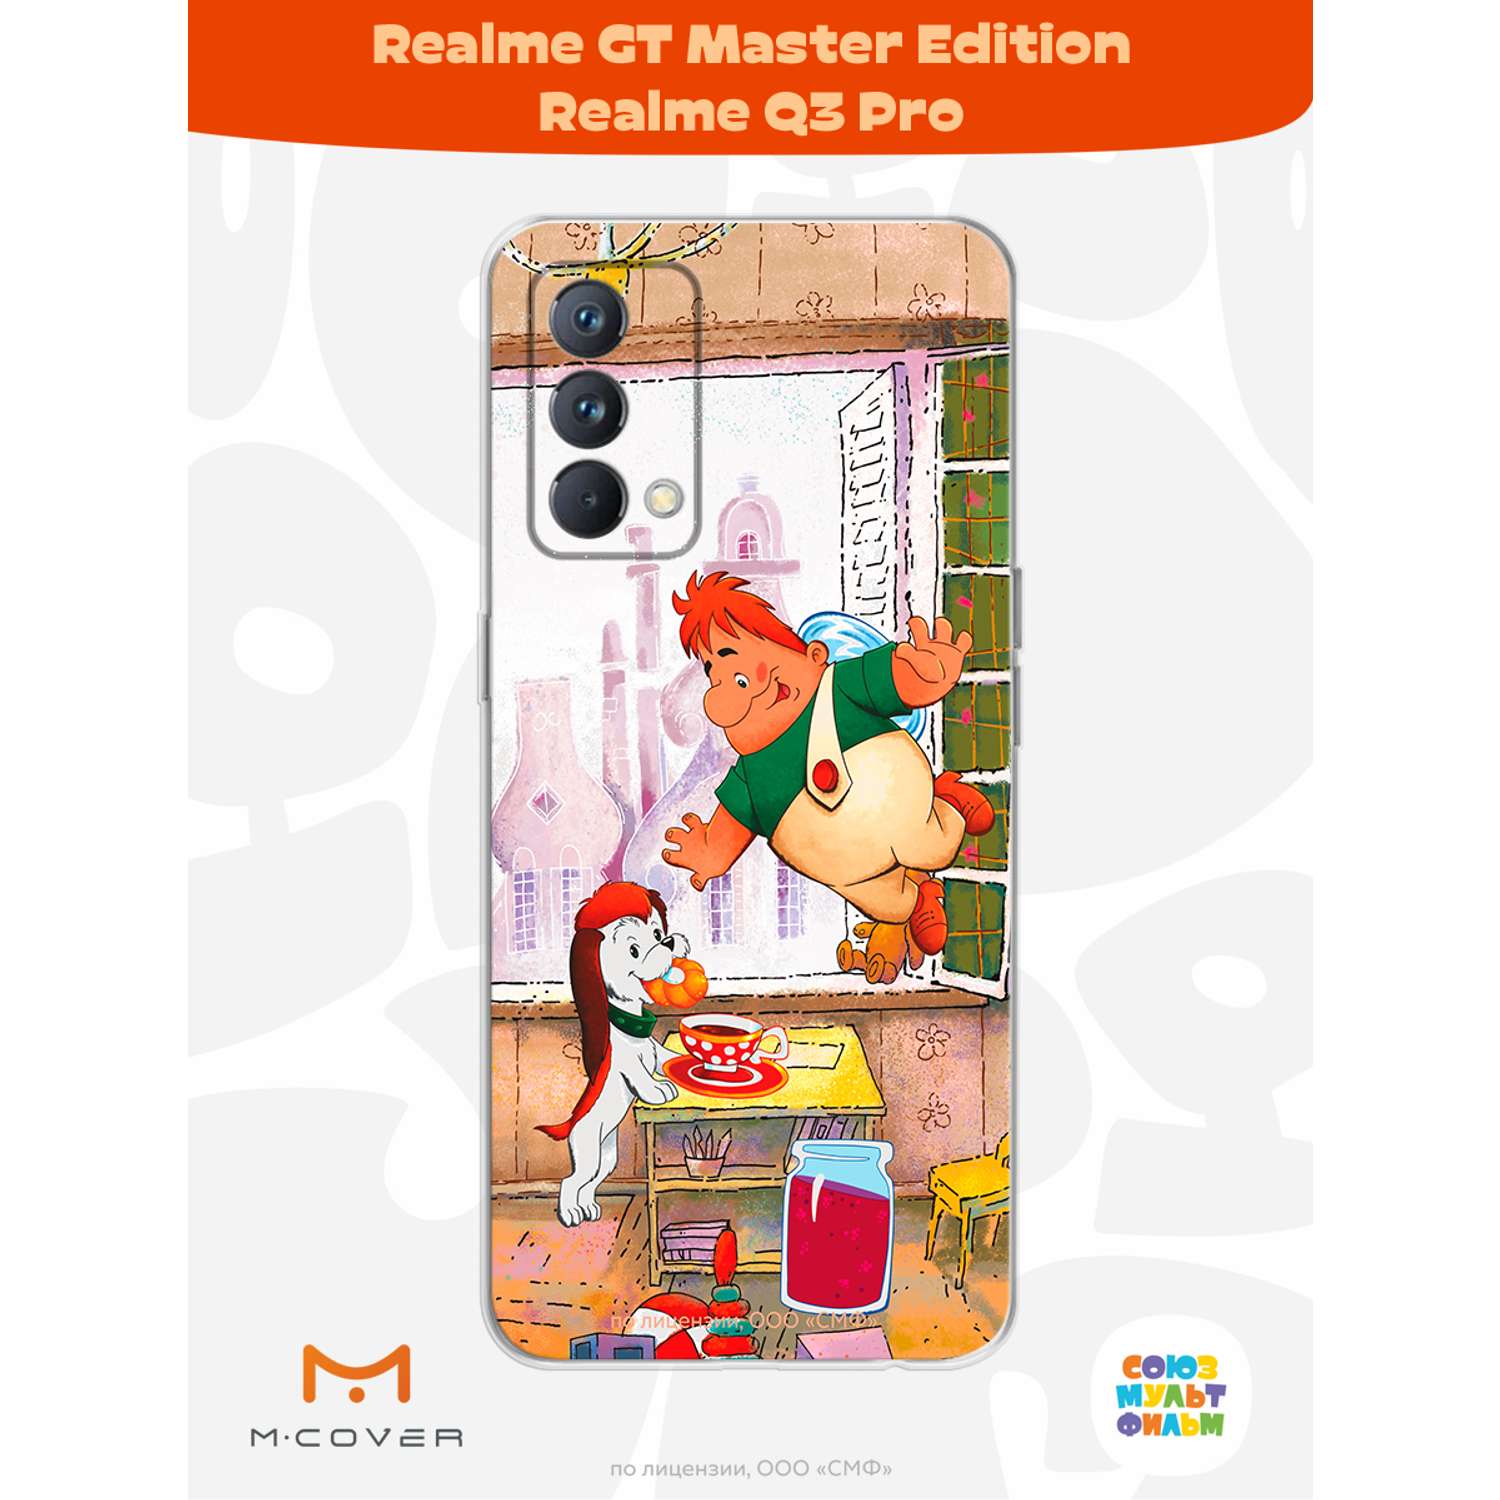 Силиконовый чехол Mcover для смартфона Realme GT Master Edition Q3 Pro Союзмультфильм плюшками балуемся - фото 2